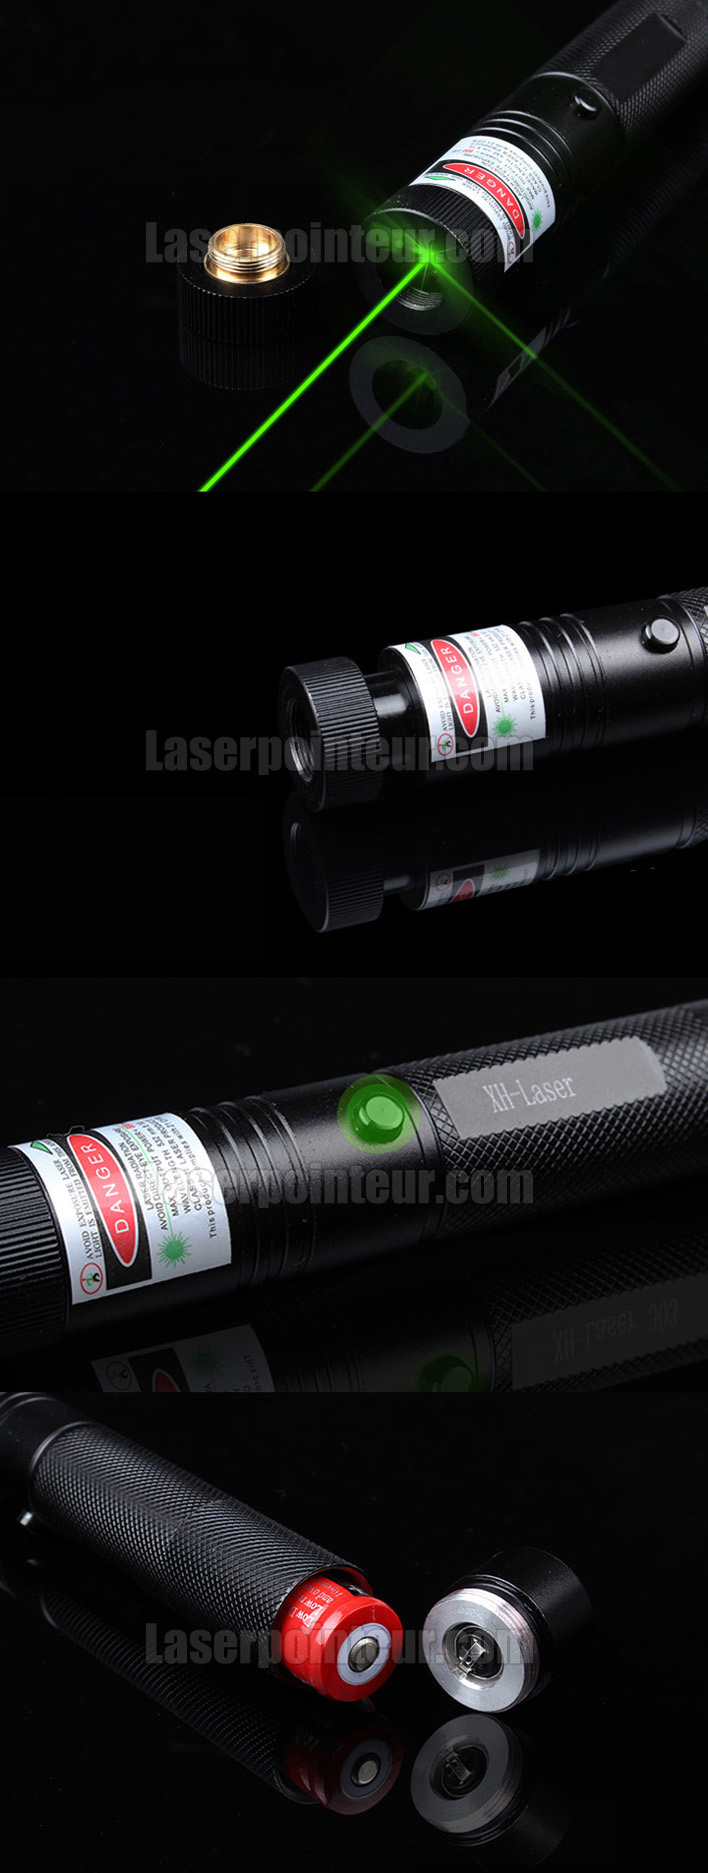 pointeur laser vert 100mw